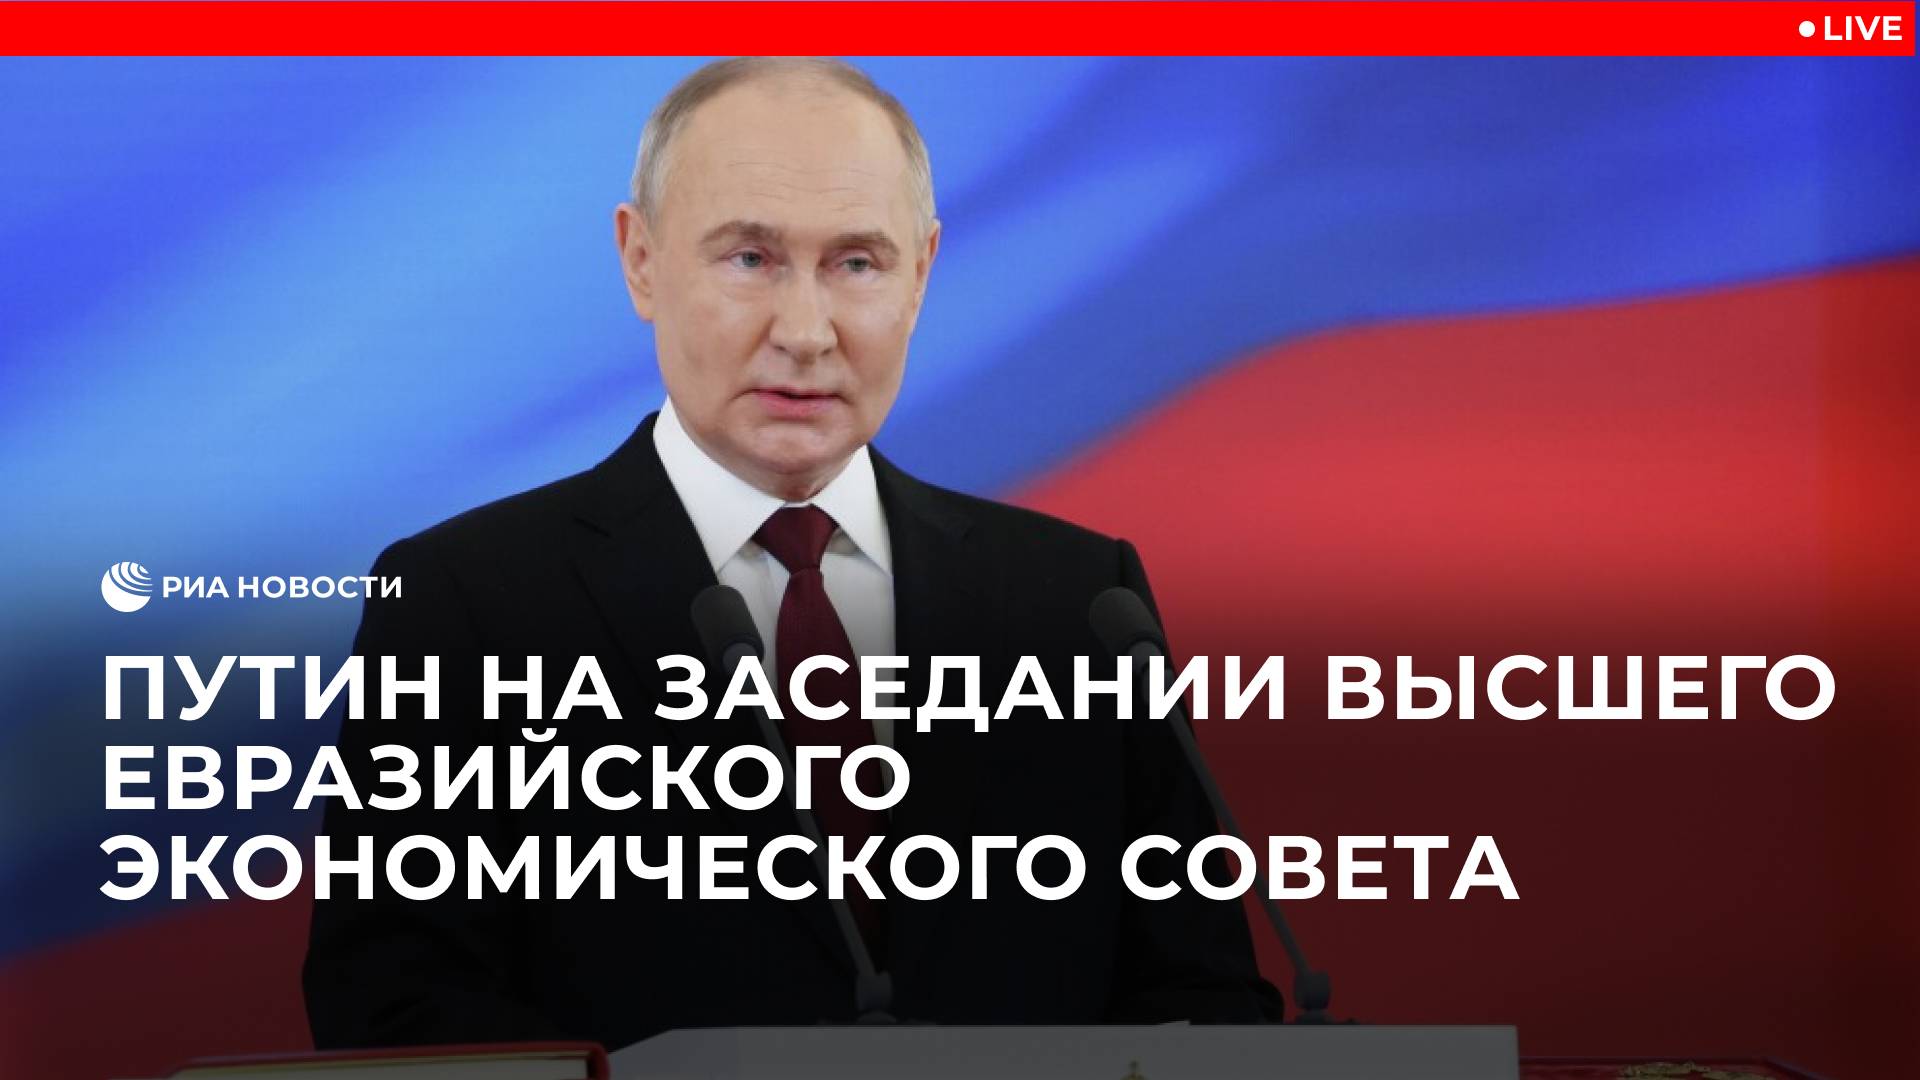 Путин на заседании Высшего Евразийского экономического совета